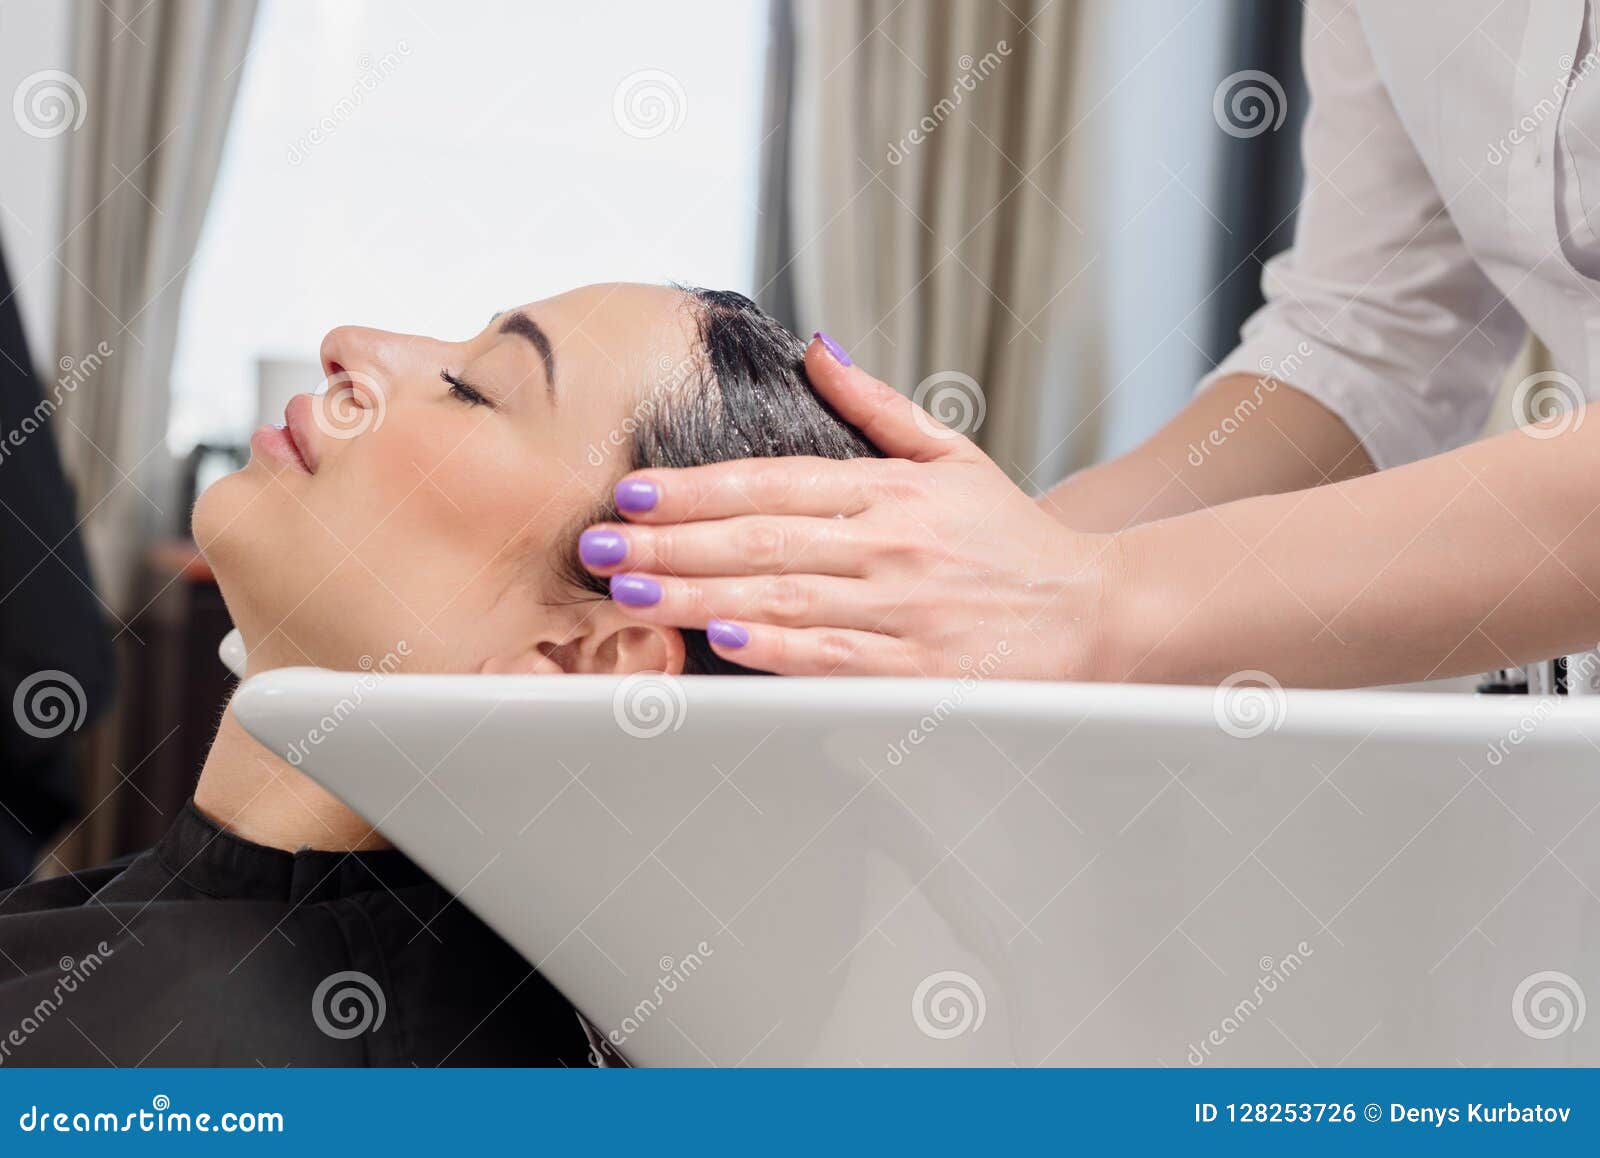 hair wash procedure hairdresser washing her clients professional sink 128253726